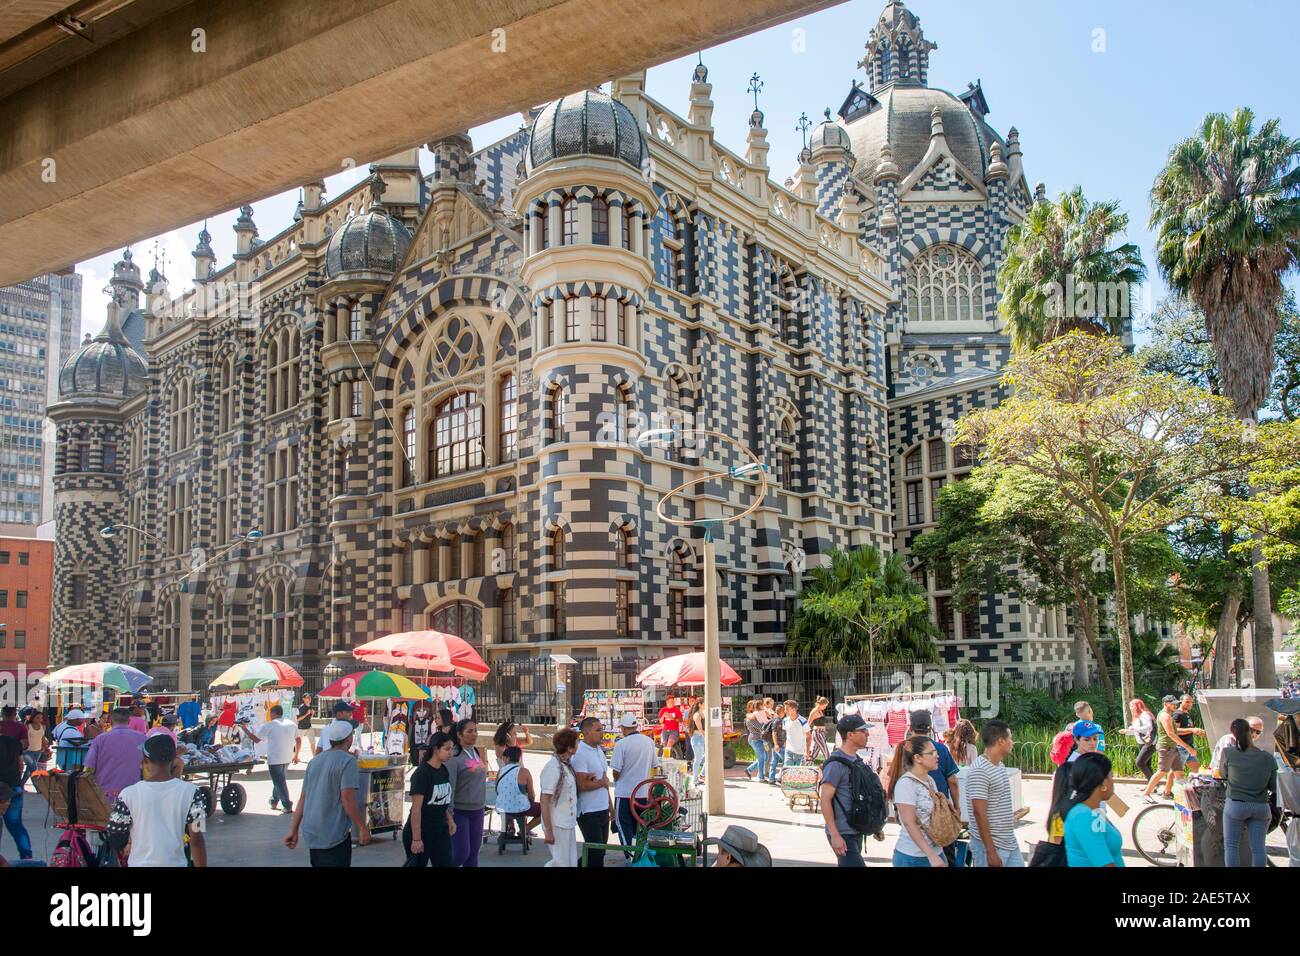 Das Rafael Uribe Uribe Palast der Kultur und Straßenhändler in der Innenstadt von Medellin, Kolumbien. Medellin, Kolumbien. Stockfoto